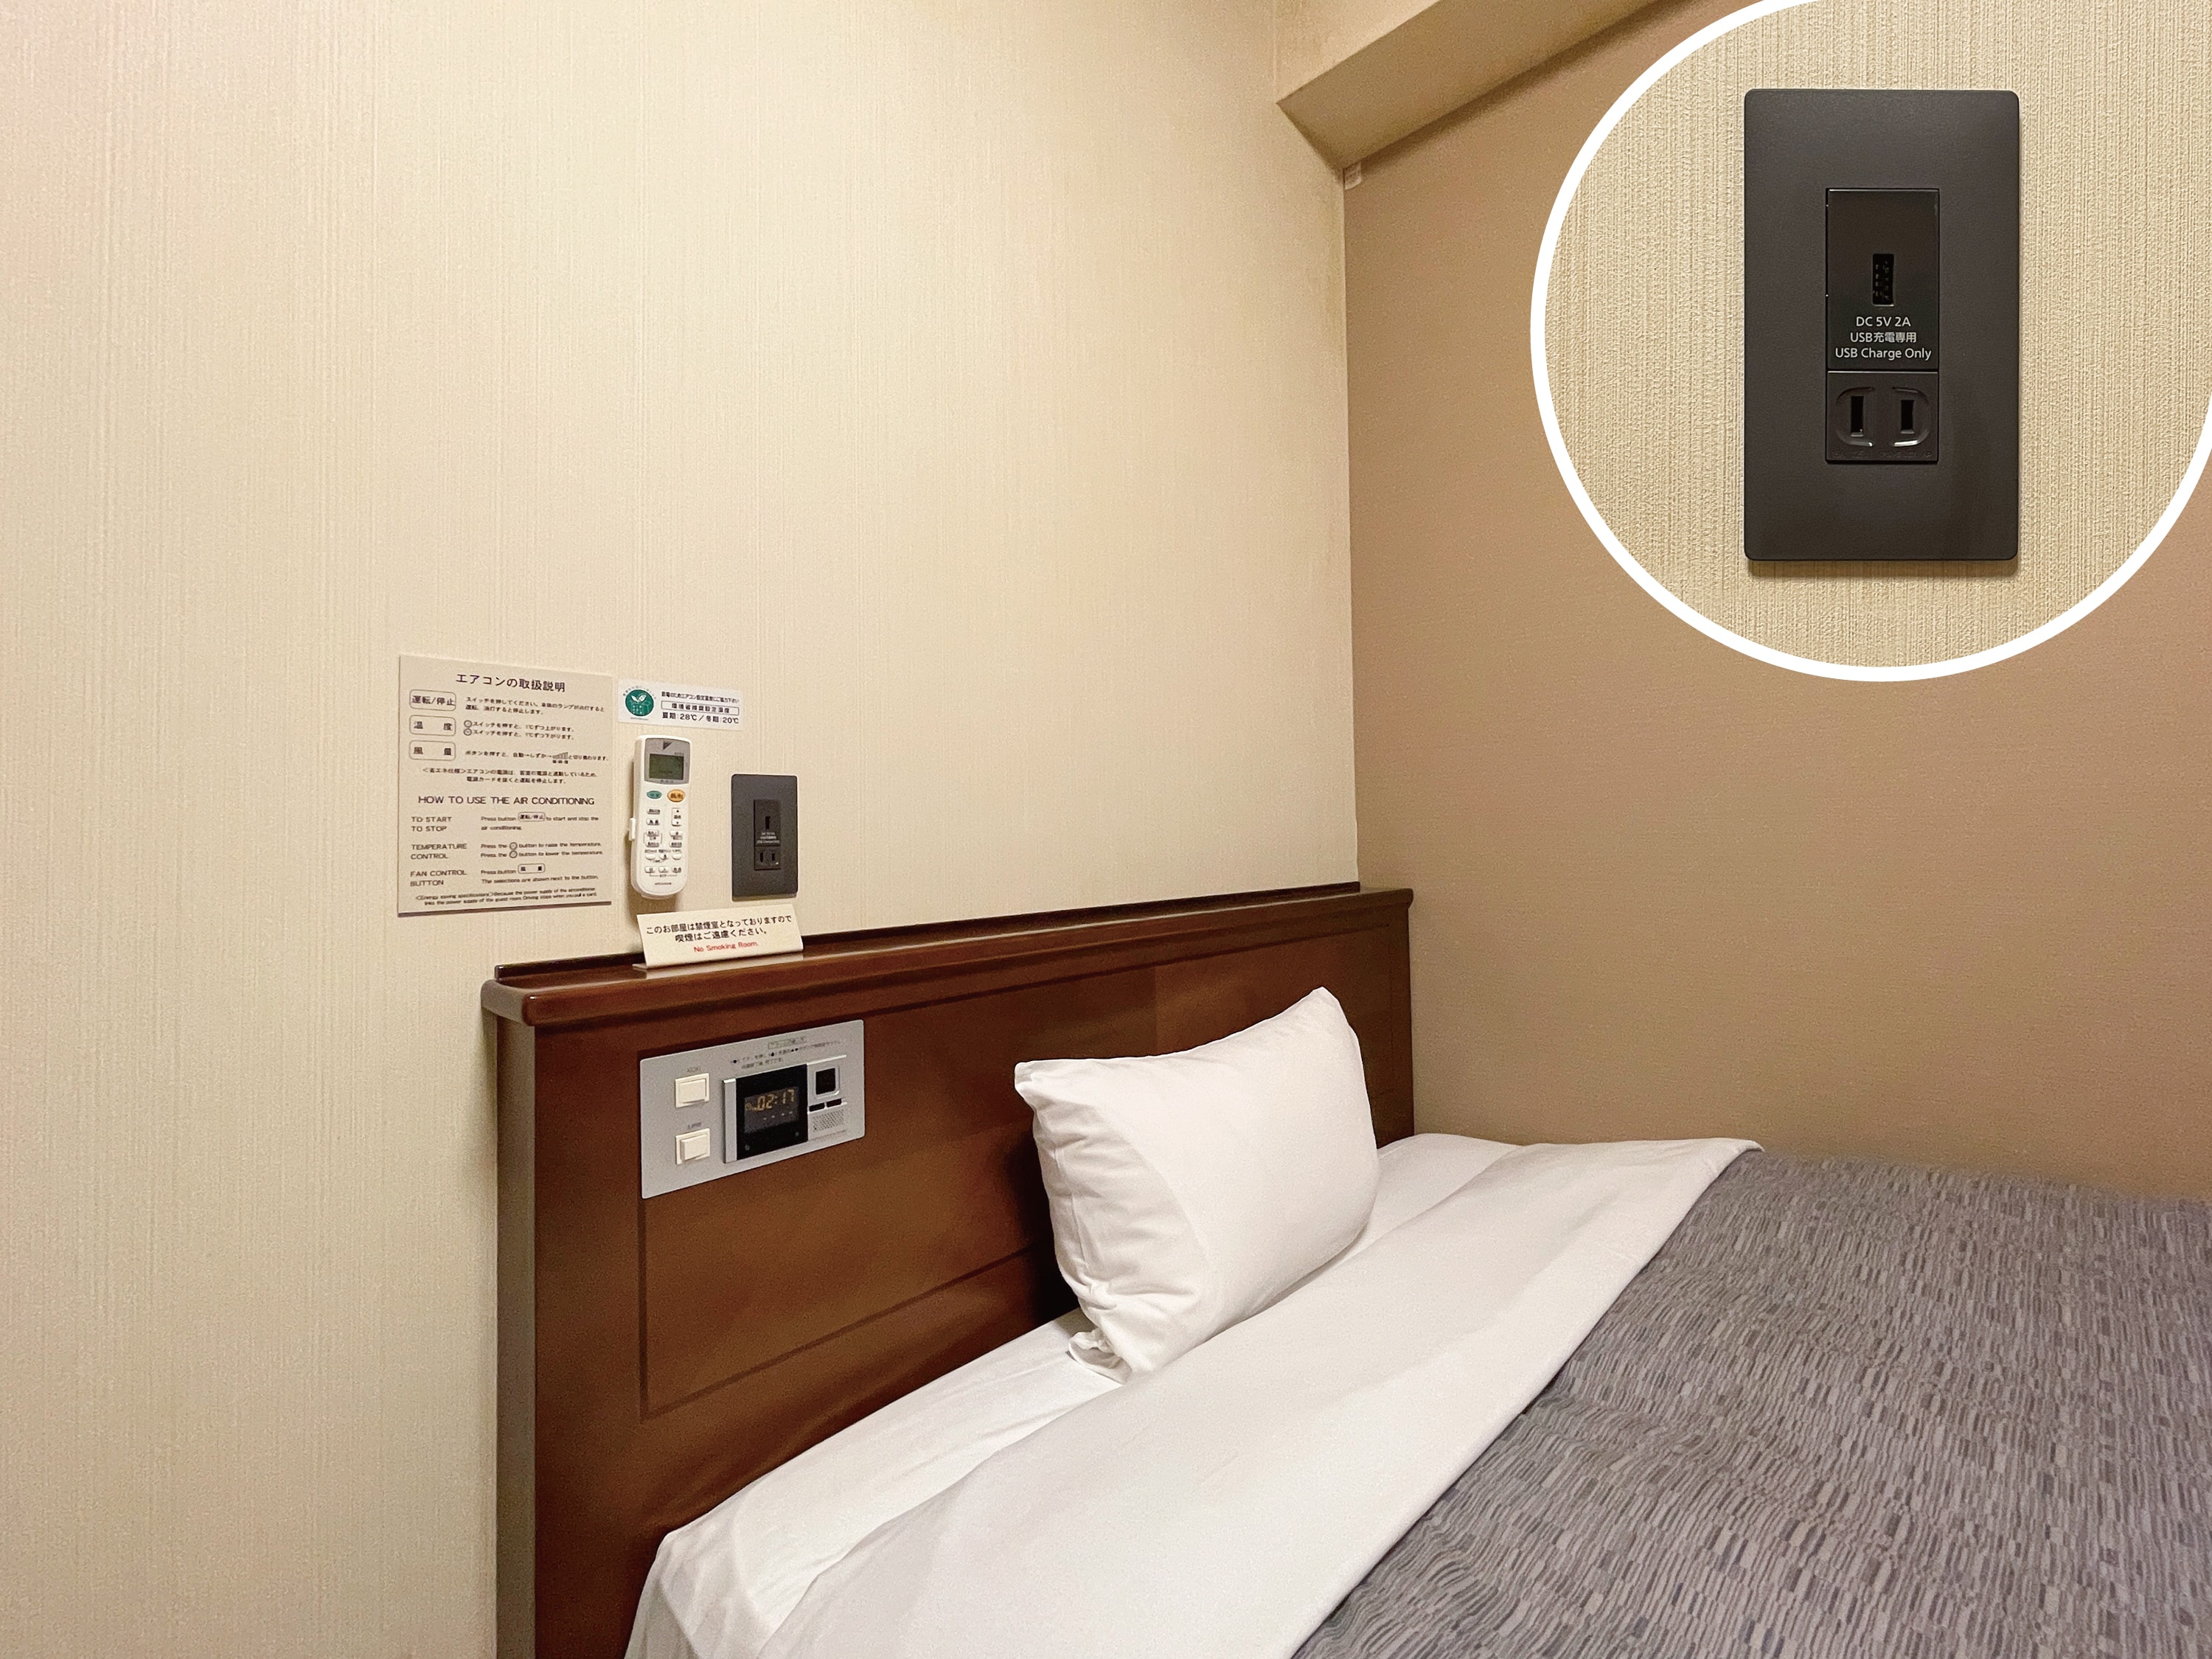 ◆ 我們在客房床頭附近安裝了 USB 插座 ◆